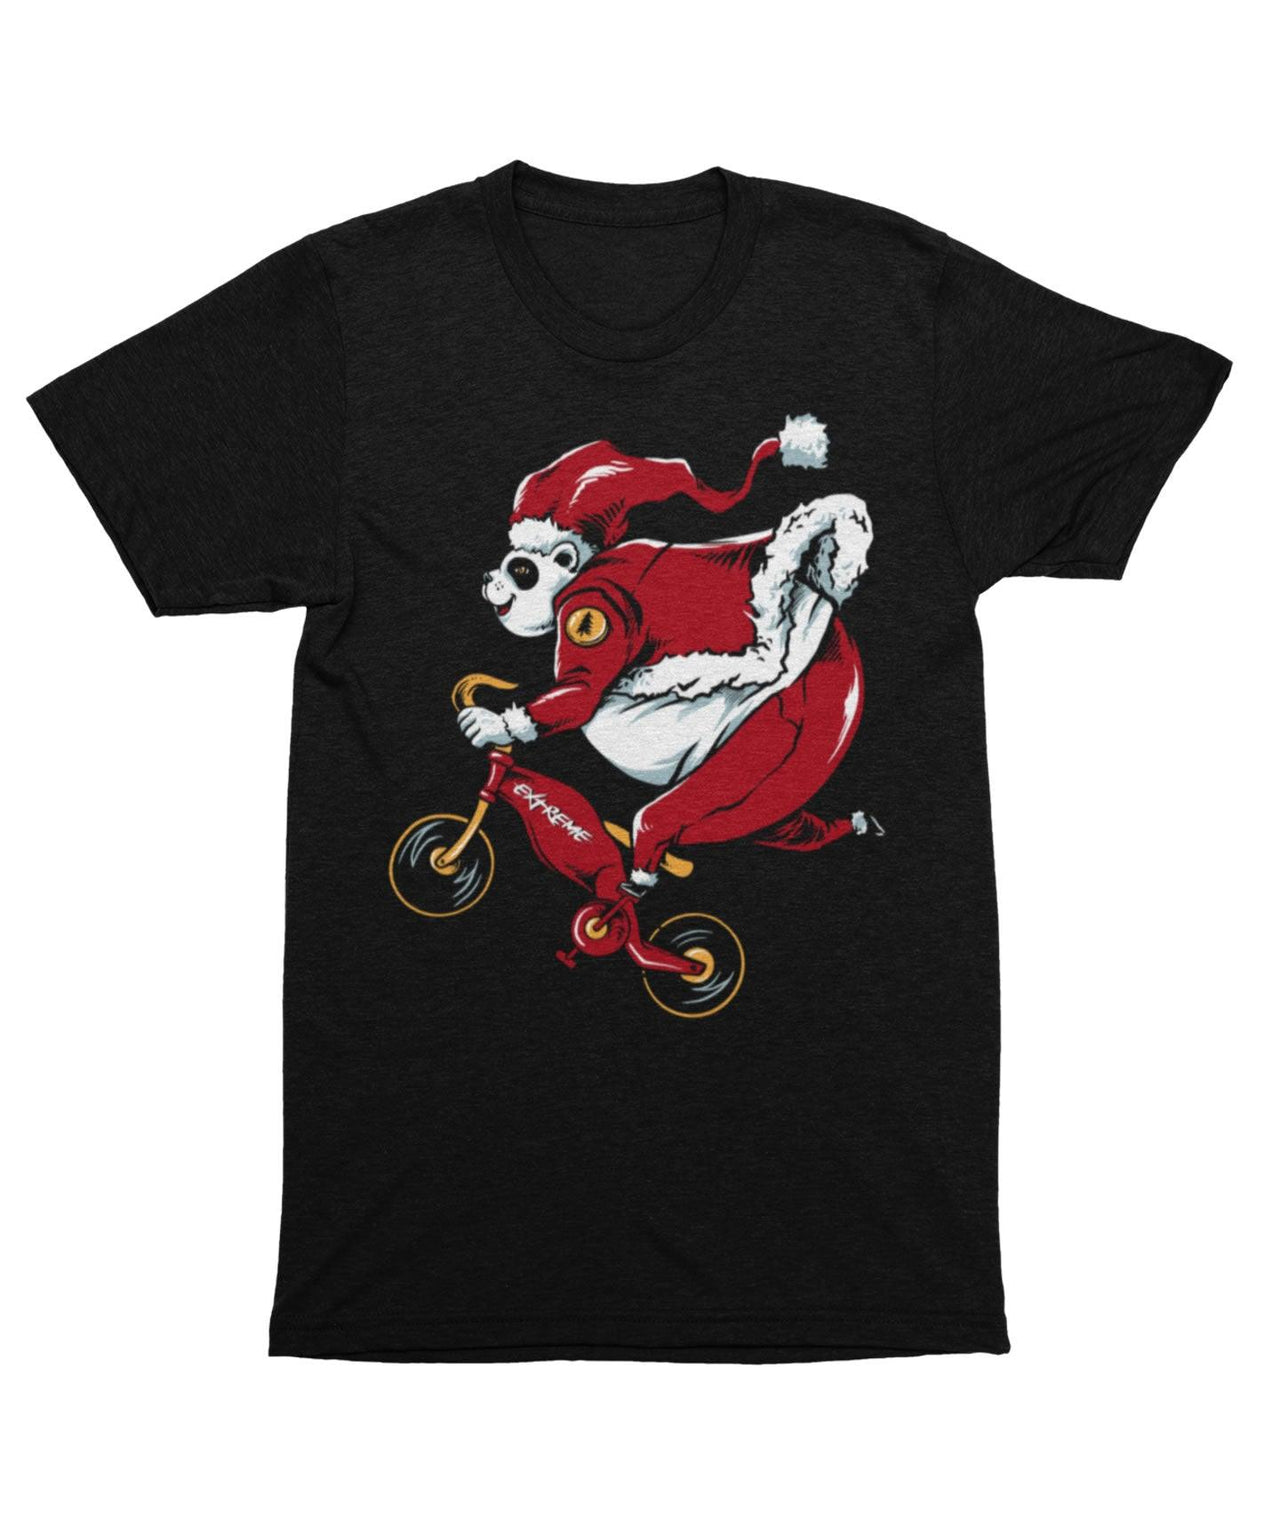 Panda Santa Unisex Christmas Unisex T-Shirt For Men And Women 8Ball